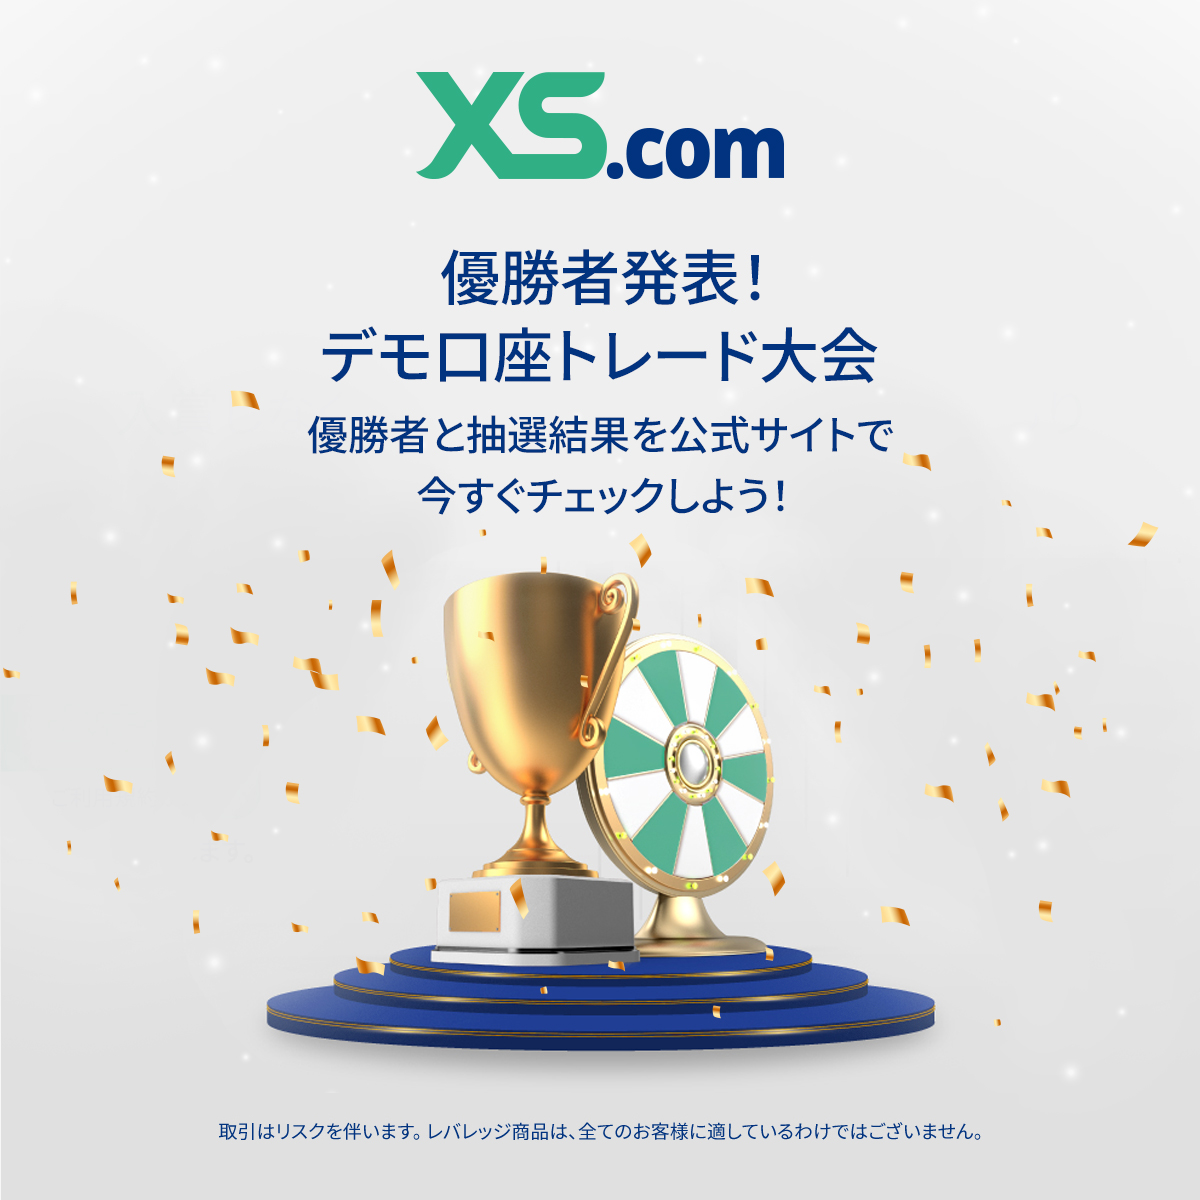 🏆デモ口座トレード大会の優勝者発表！
先日開催された、デモ口座トレード大会の優勝者を発表いたします。
xs.com/jp/promotions/… にてさっそく結果をご確認ください！

現在3,000円キャッシュバックキャンペーンを開催中🎉お見逃しなく！

#XSデモ口座トレード大会 #XScom #FX #投資